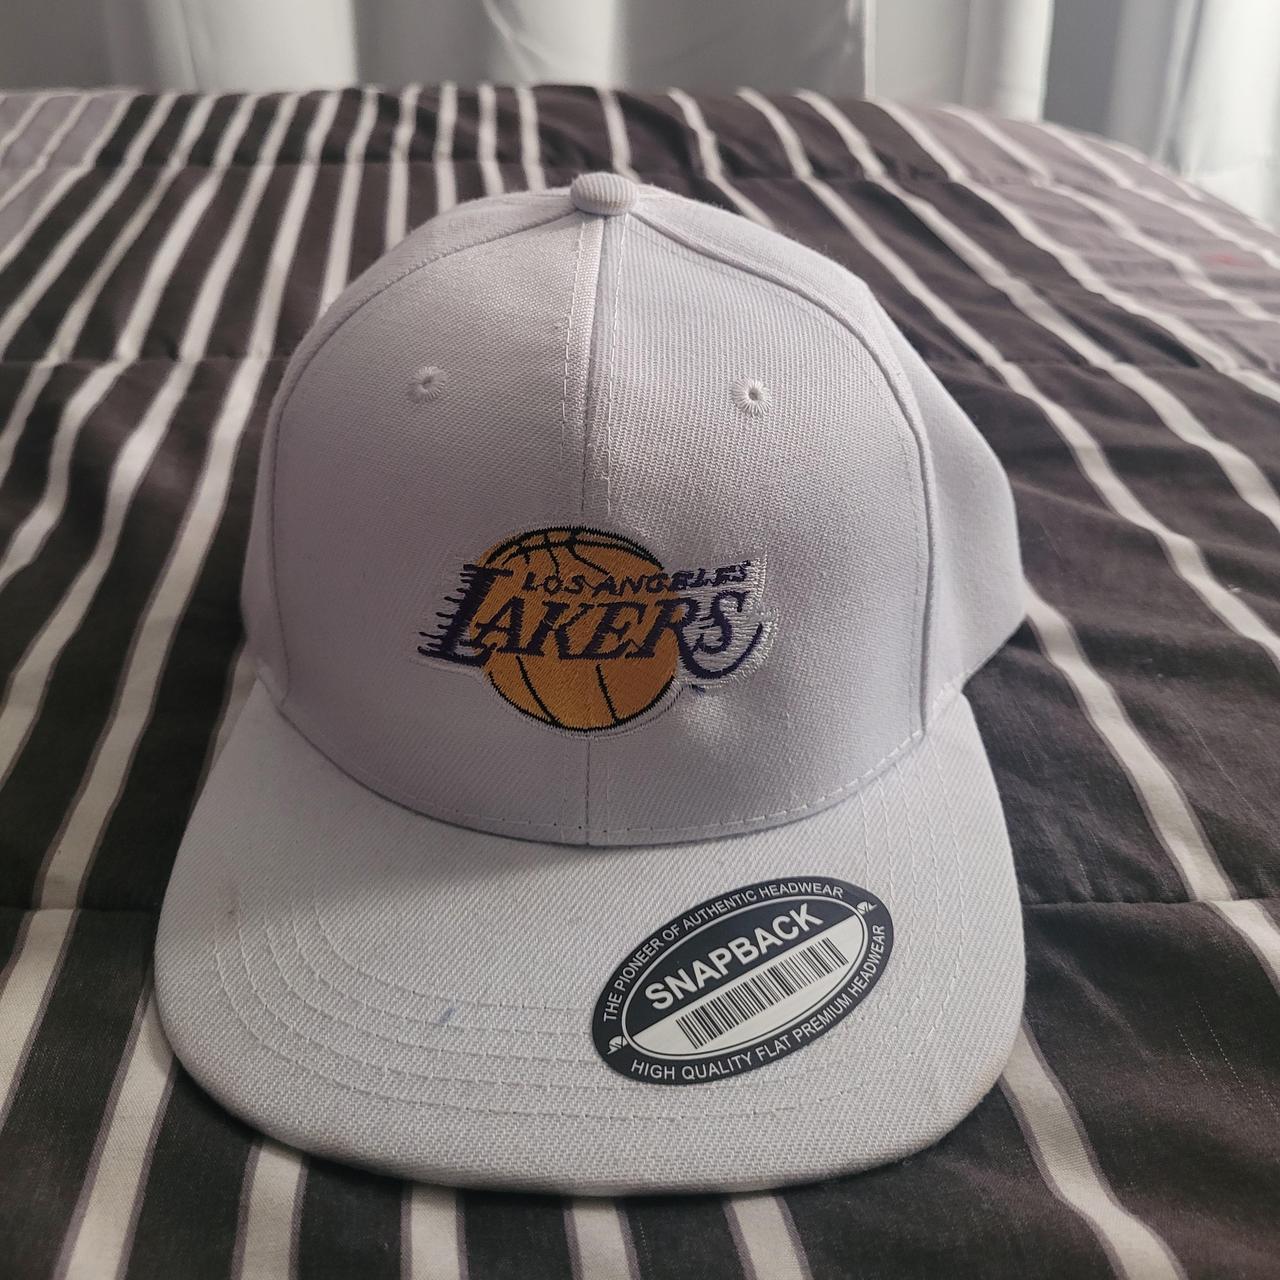 Lakers White Snap Back Hat *Adjustable! - Depop